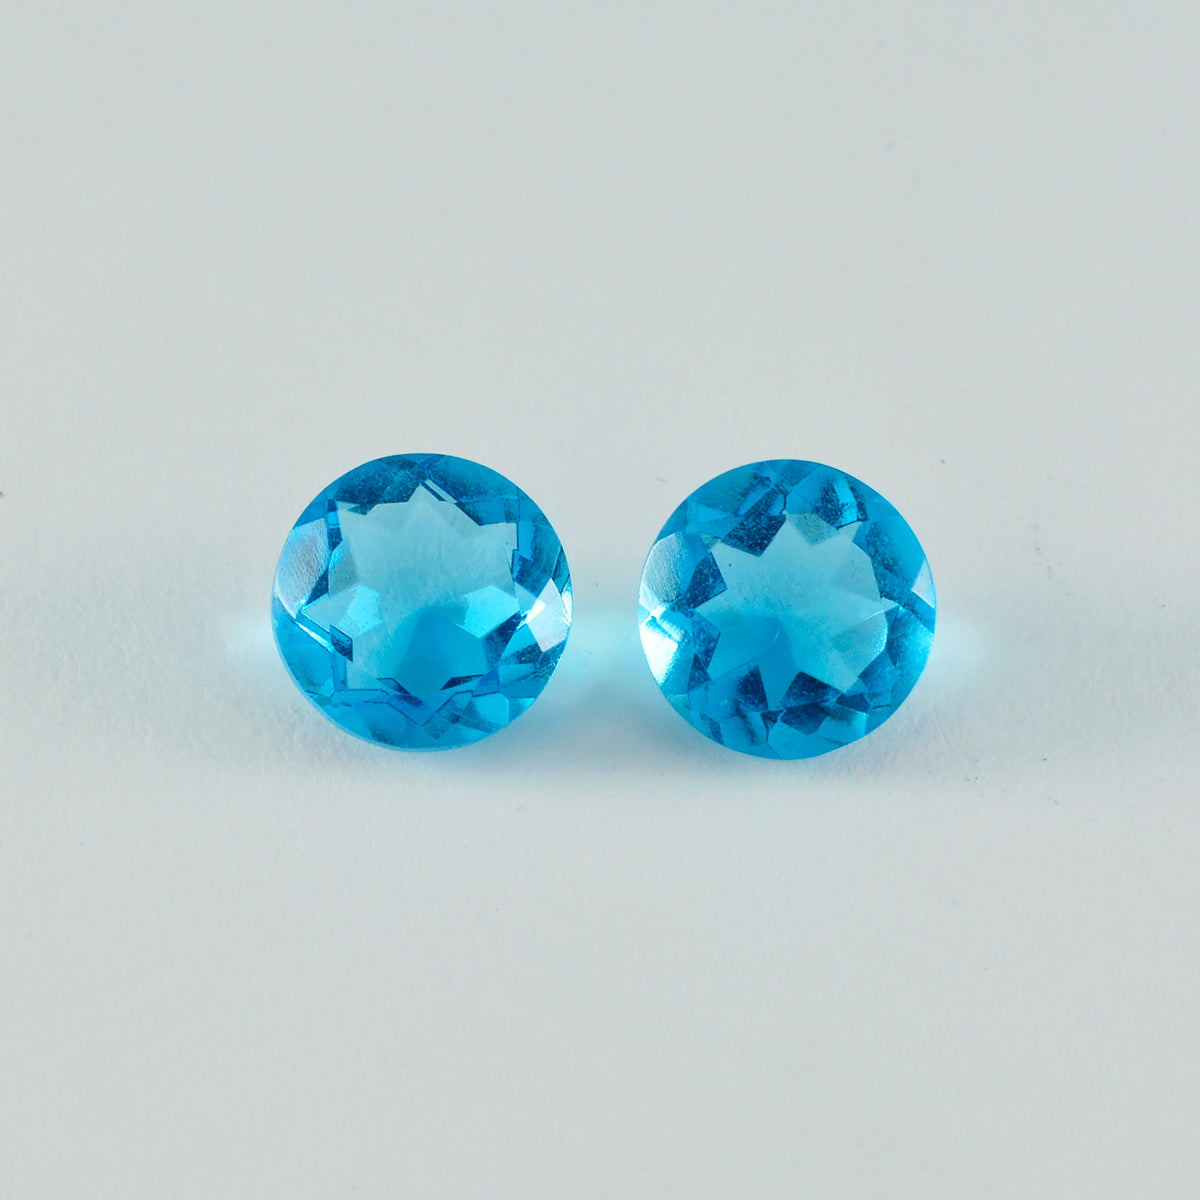 riyogems 1шт голубой топаз cz ограненный 13x13 мм круглая форма A+1 качество свободный драгоценный камень